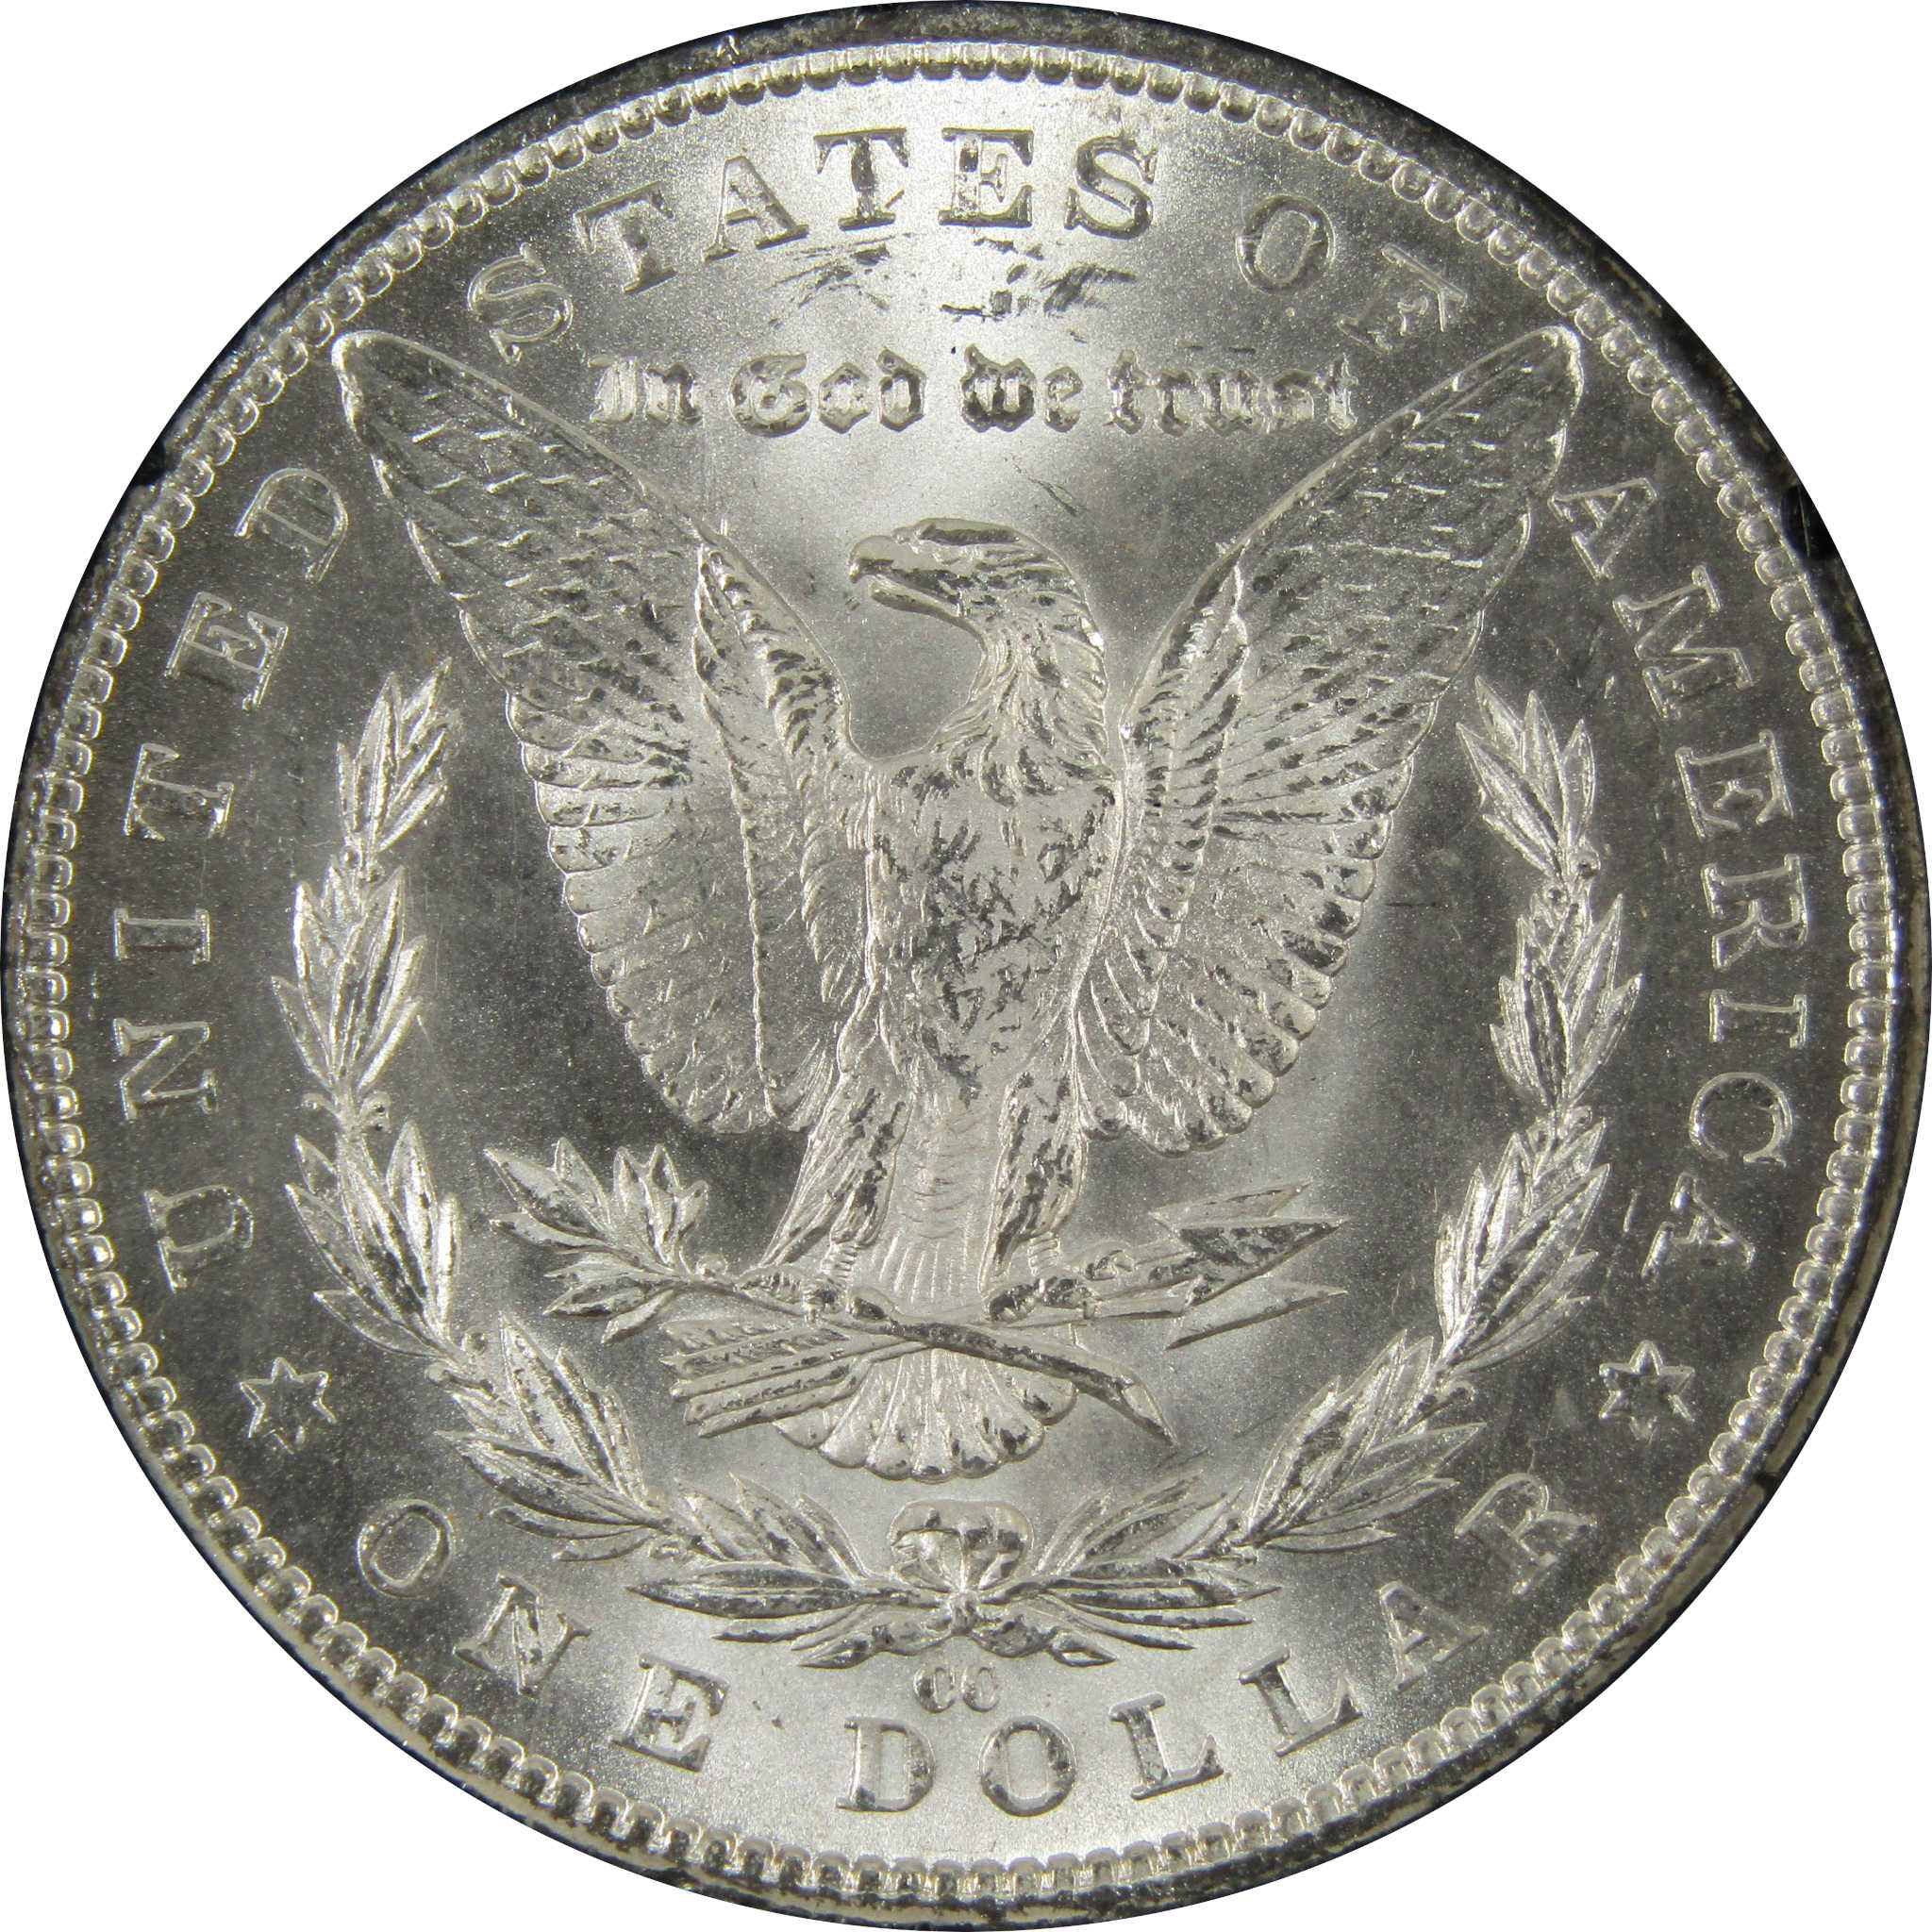 1884 CC GSA Morgan Dollar BU Uncirculated Silver $1 Coin SKU:I9859 - Morgan coin - Morgan silver dollar - Morgan silver dollar for sale - Profile Coins &amp; Collectibles